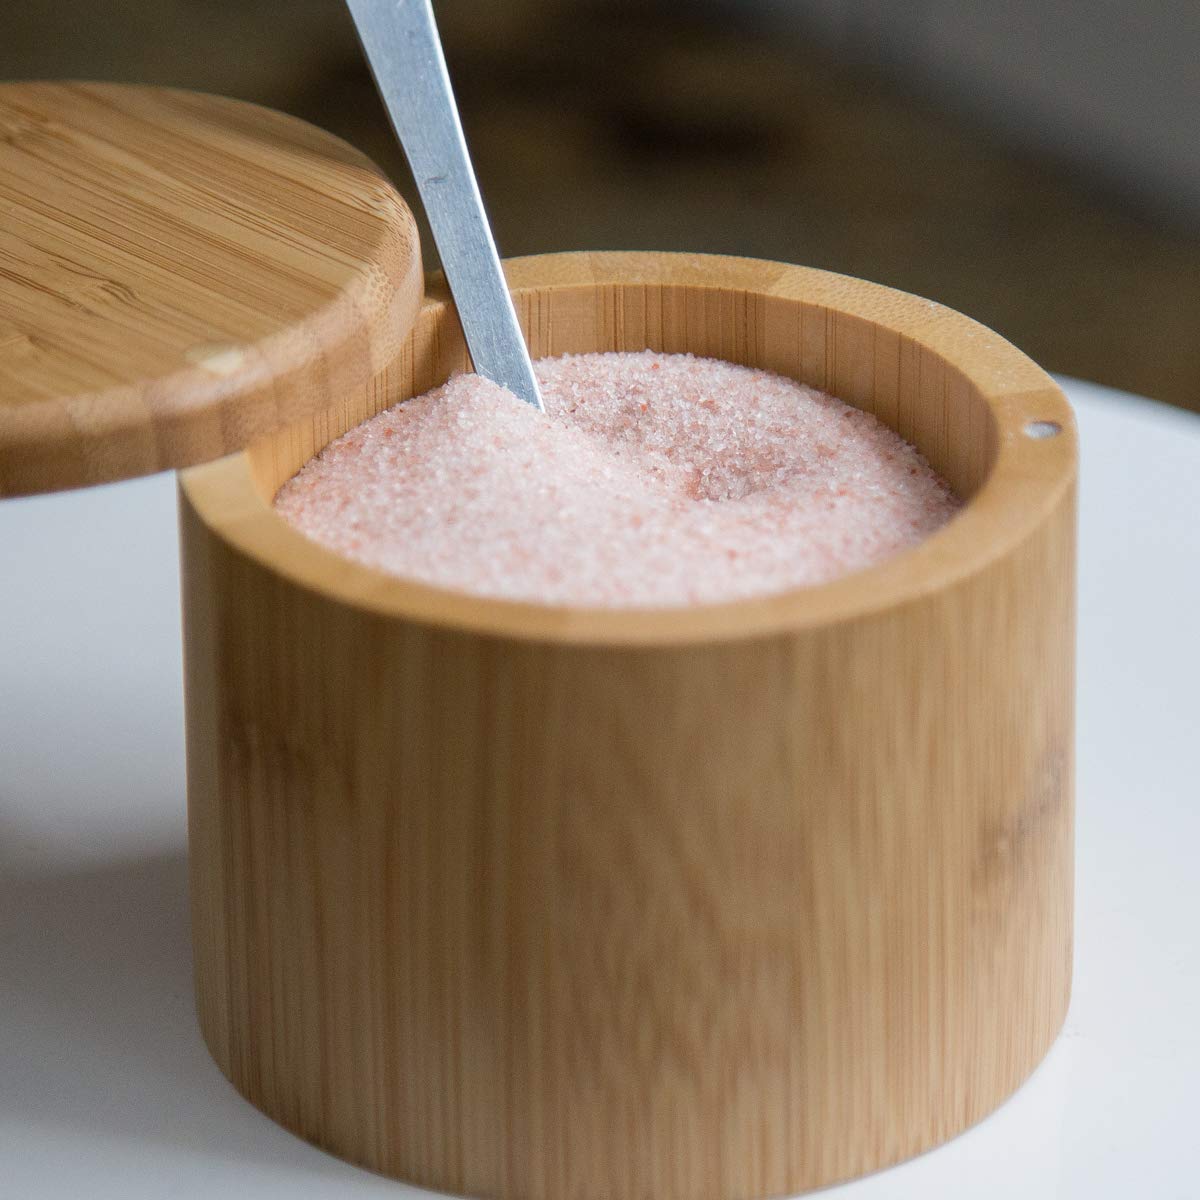 Bamboo Salt Keeper with Himalayan Pink Salt.